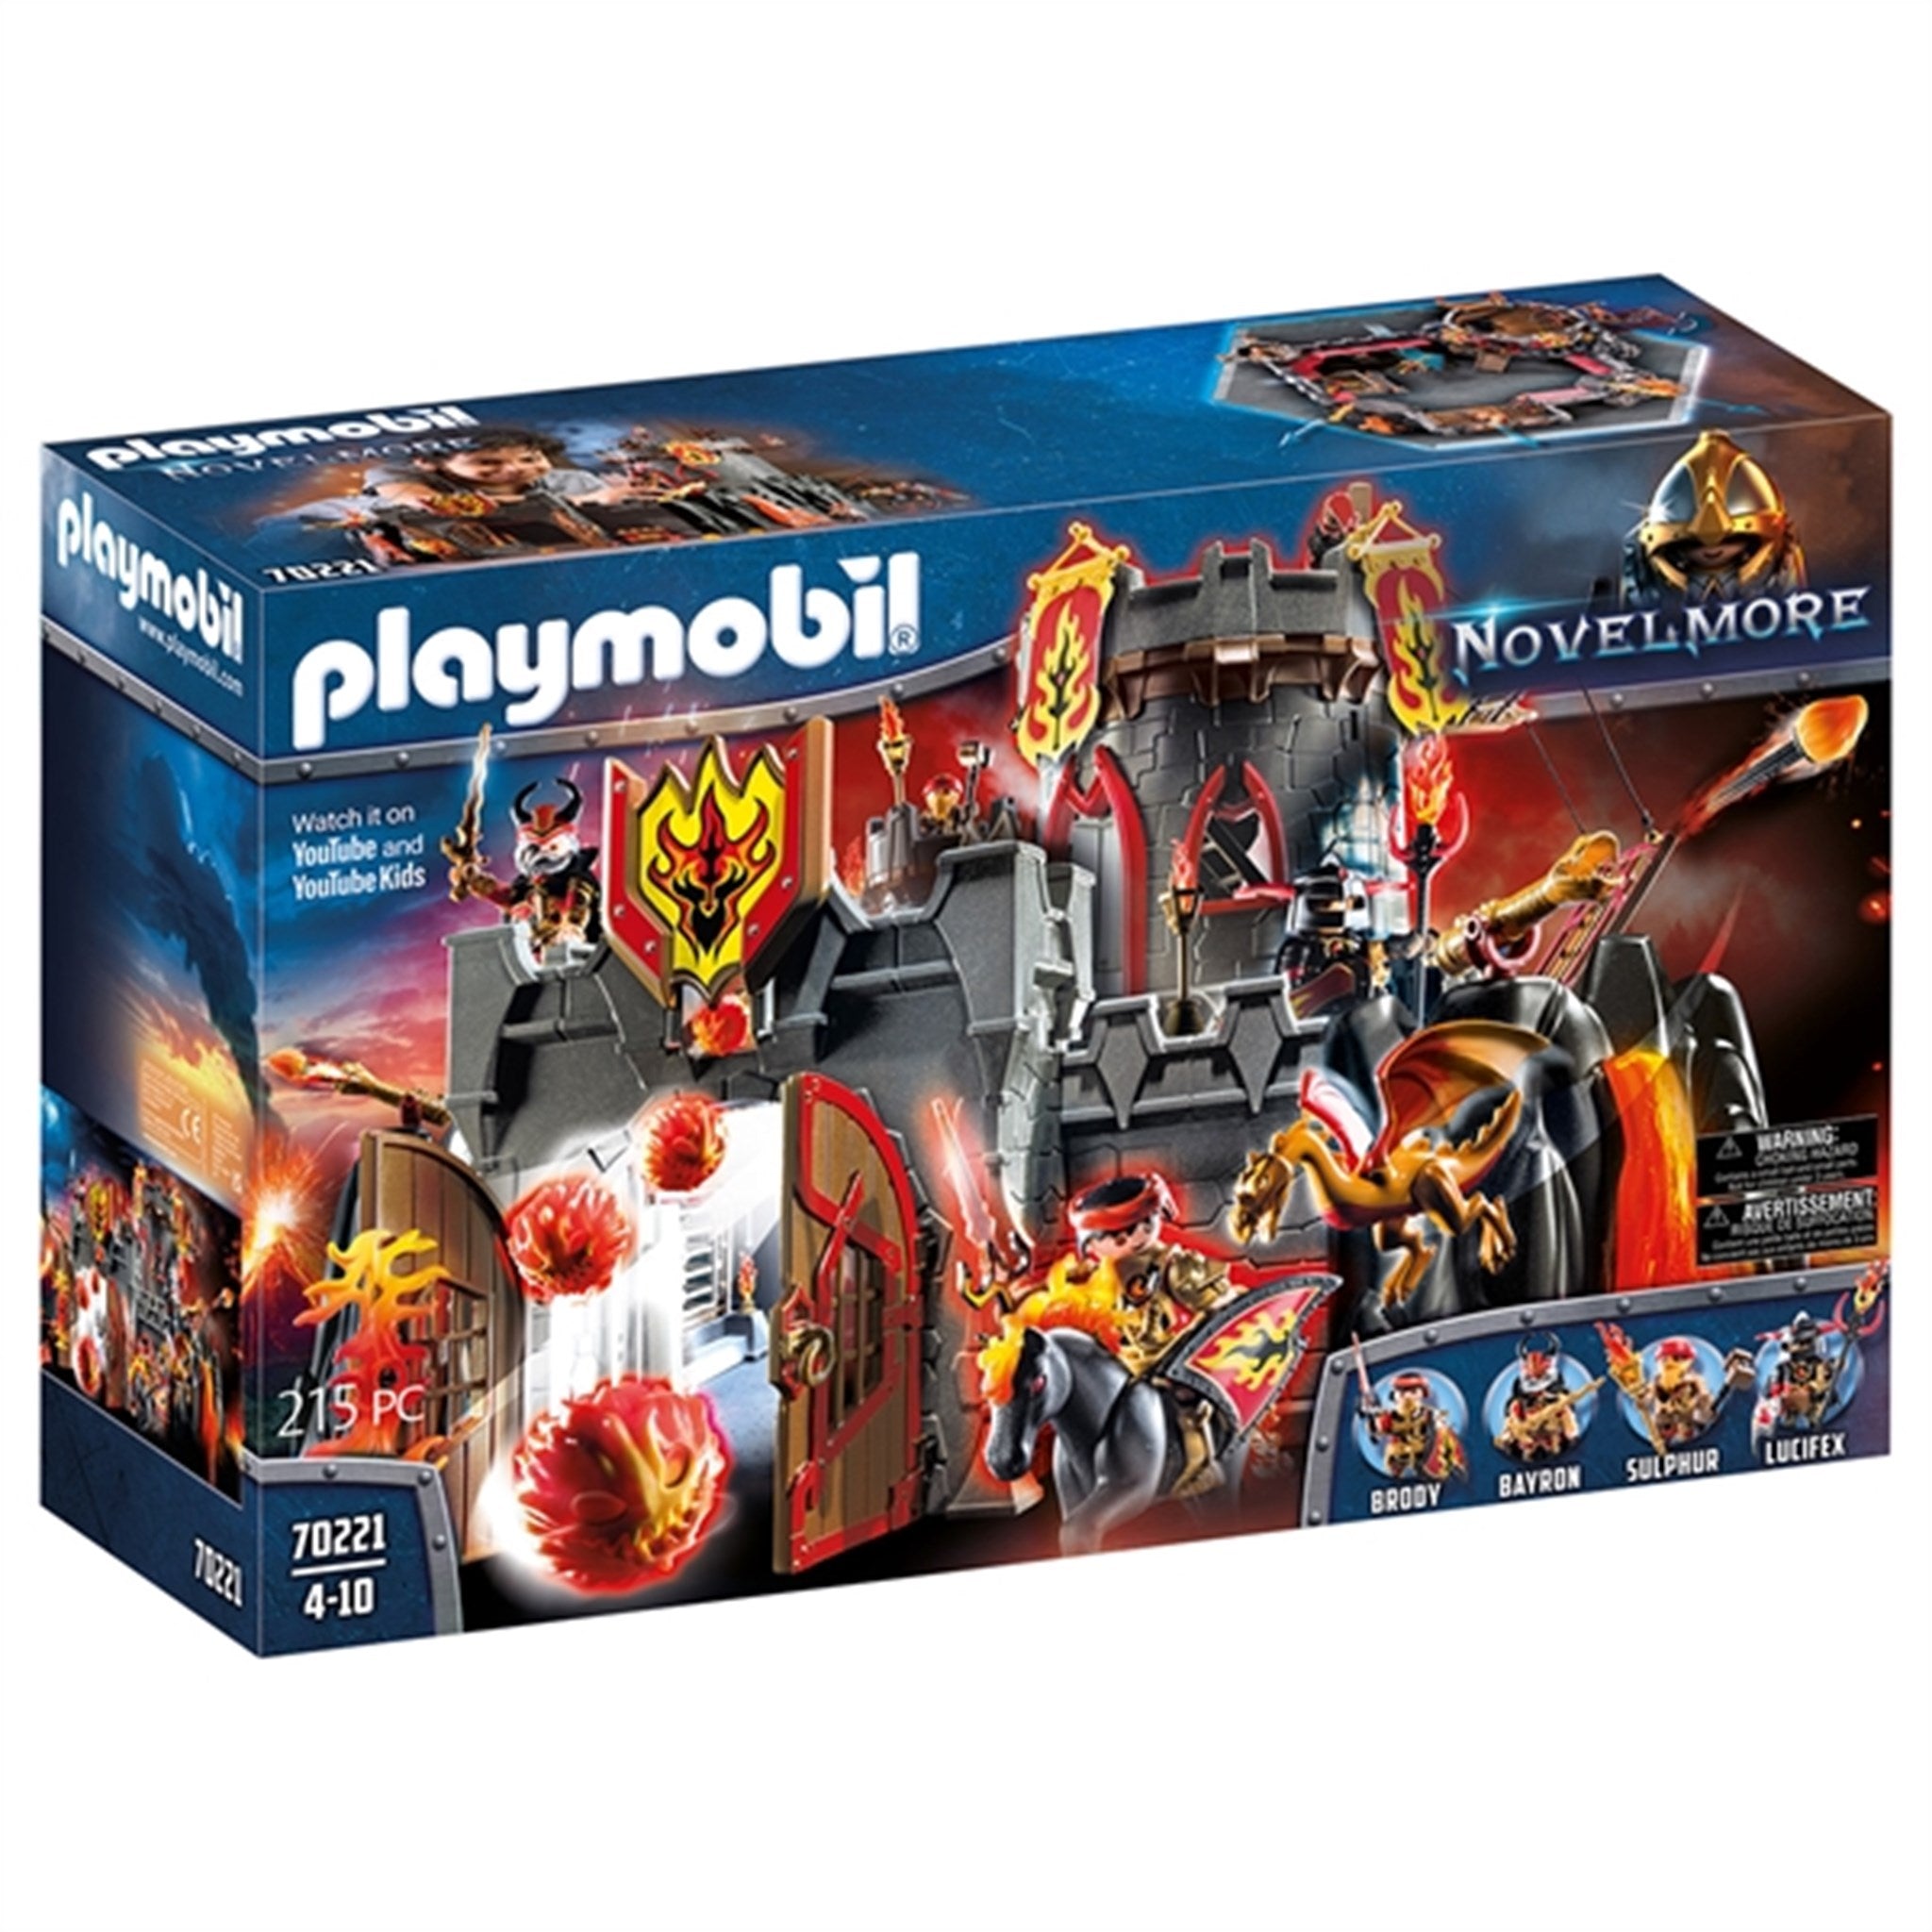 Playmobil® Novelmore - Burnham Raiders Festning